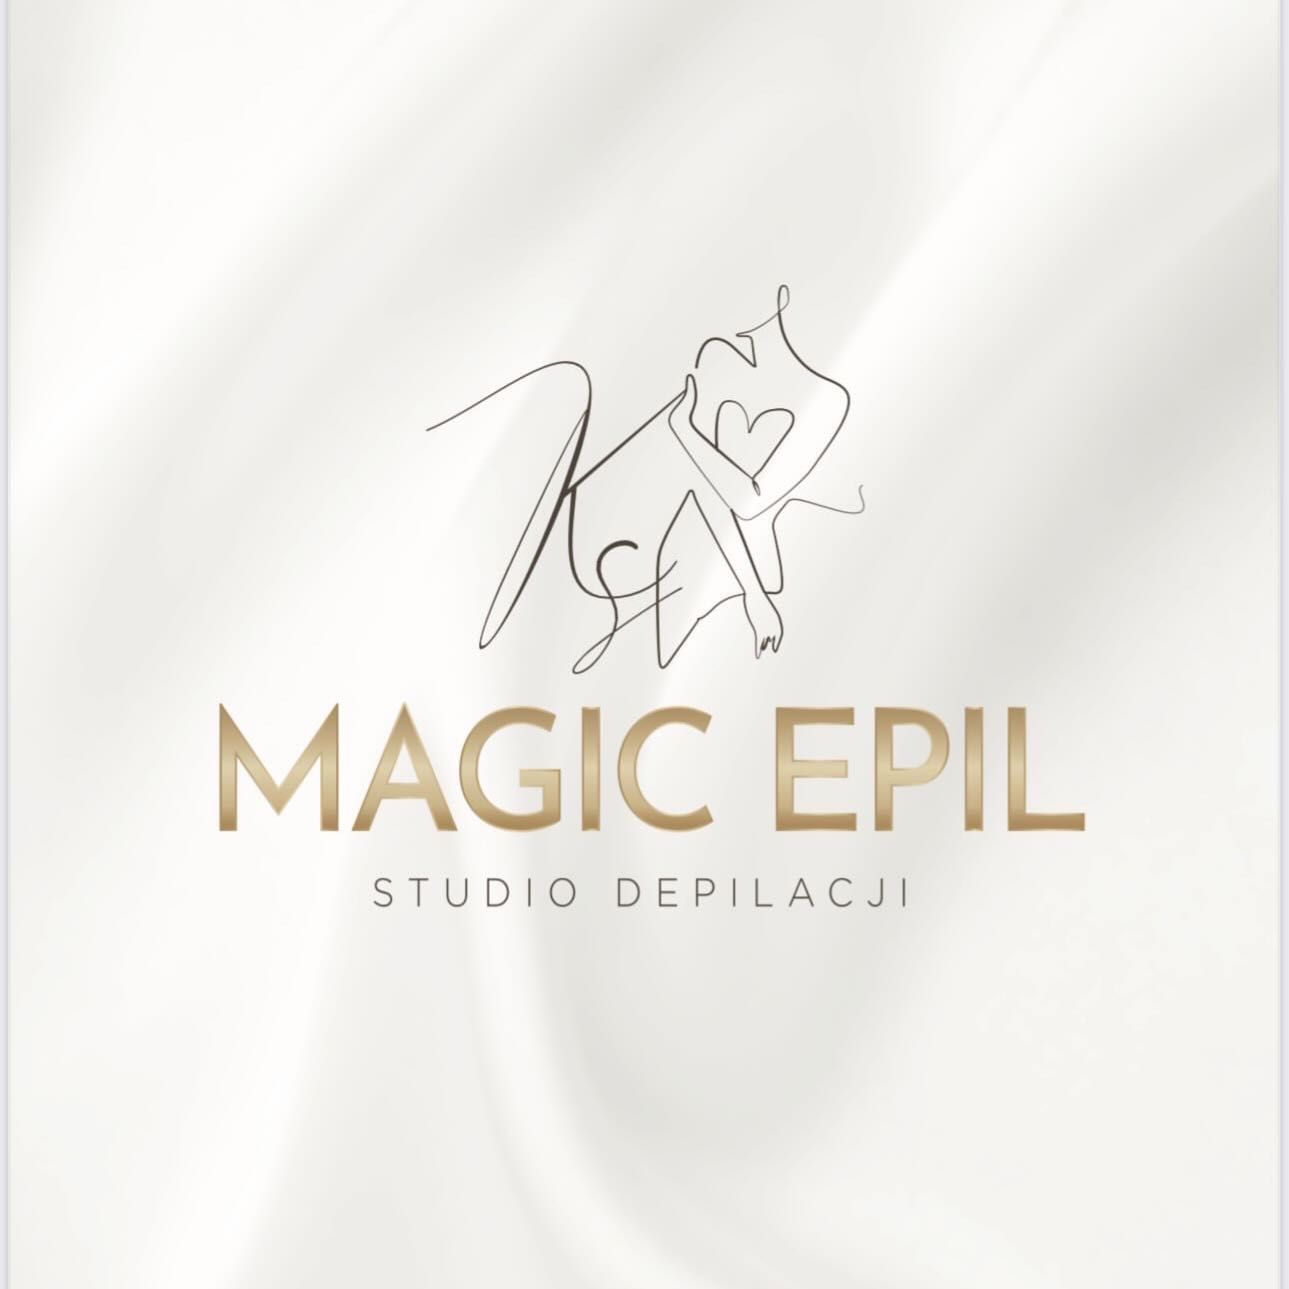 Magic Epil, Kolorowa, 19, lok 154 ( w dół po schodach obok salonu fryzjerskiego CARE), 02-495, Warszawa, Ursus